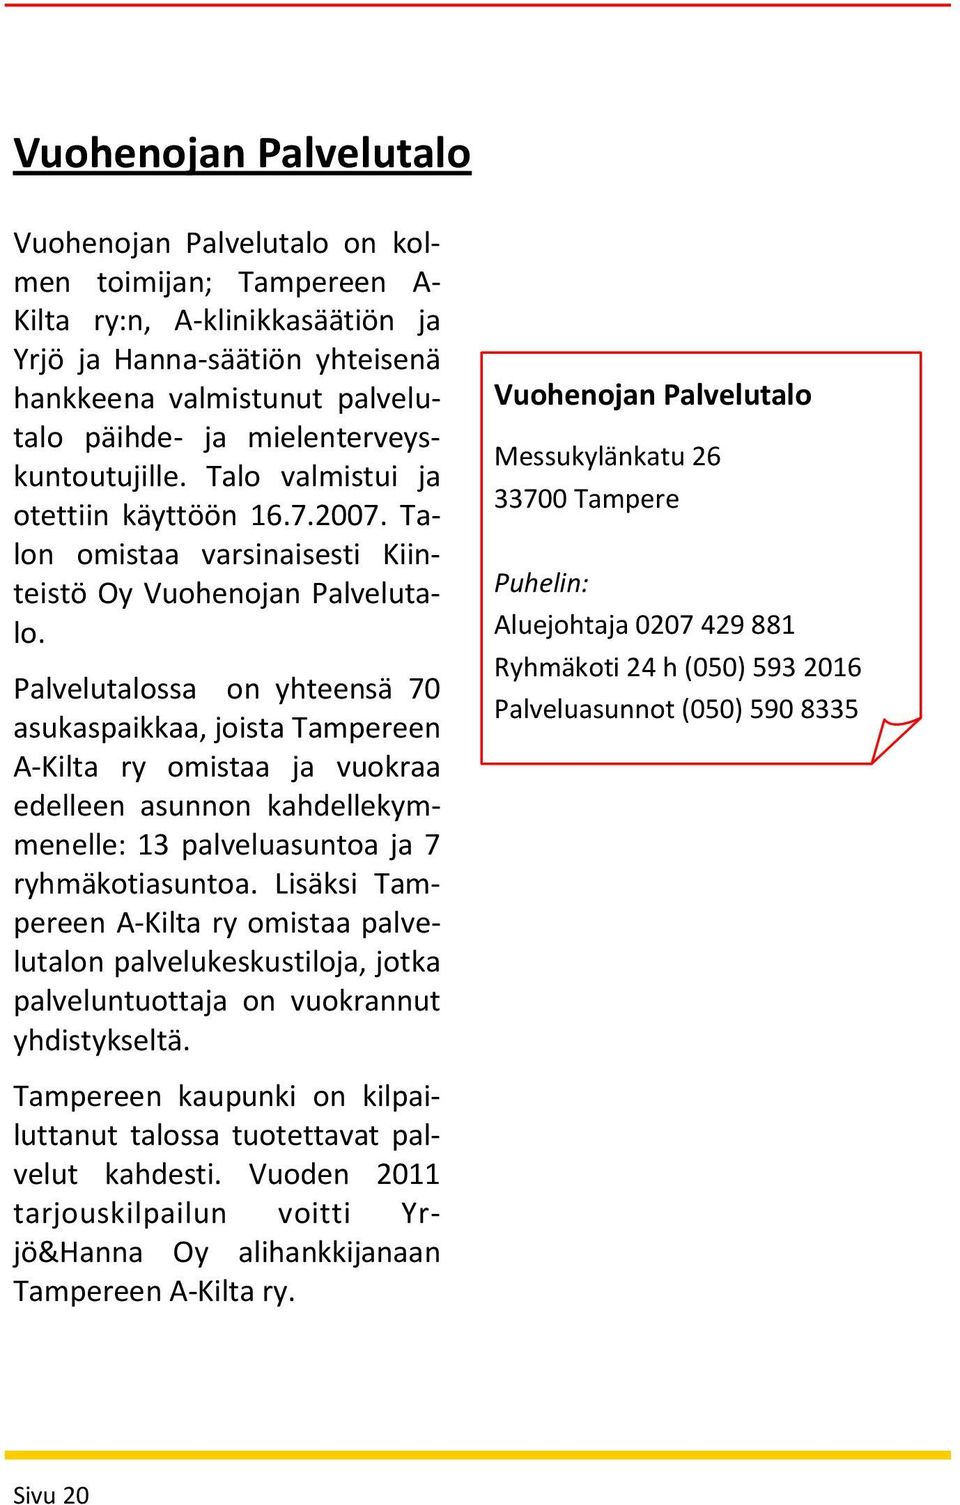 Palvelutalossa on yhteensä 70 asukaspaikkaa, joista Tampereen A-Kilta ry omistaa ja vuokraa edelleen asunnon kahdellekymmenelle: 13 palveluasuntoa ja 7 ryhmäkotiasuntoa.